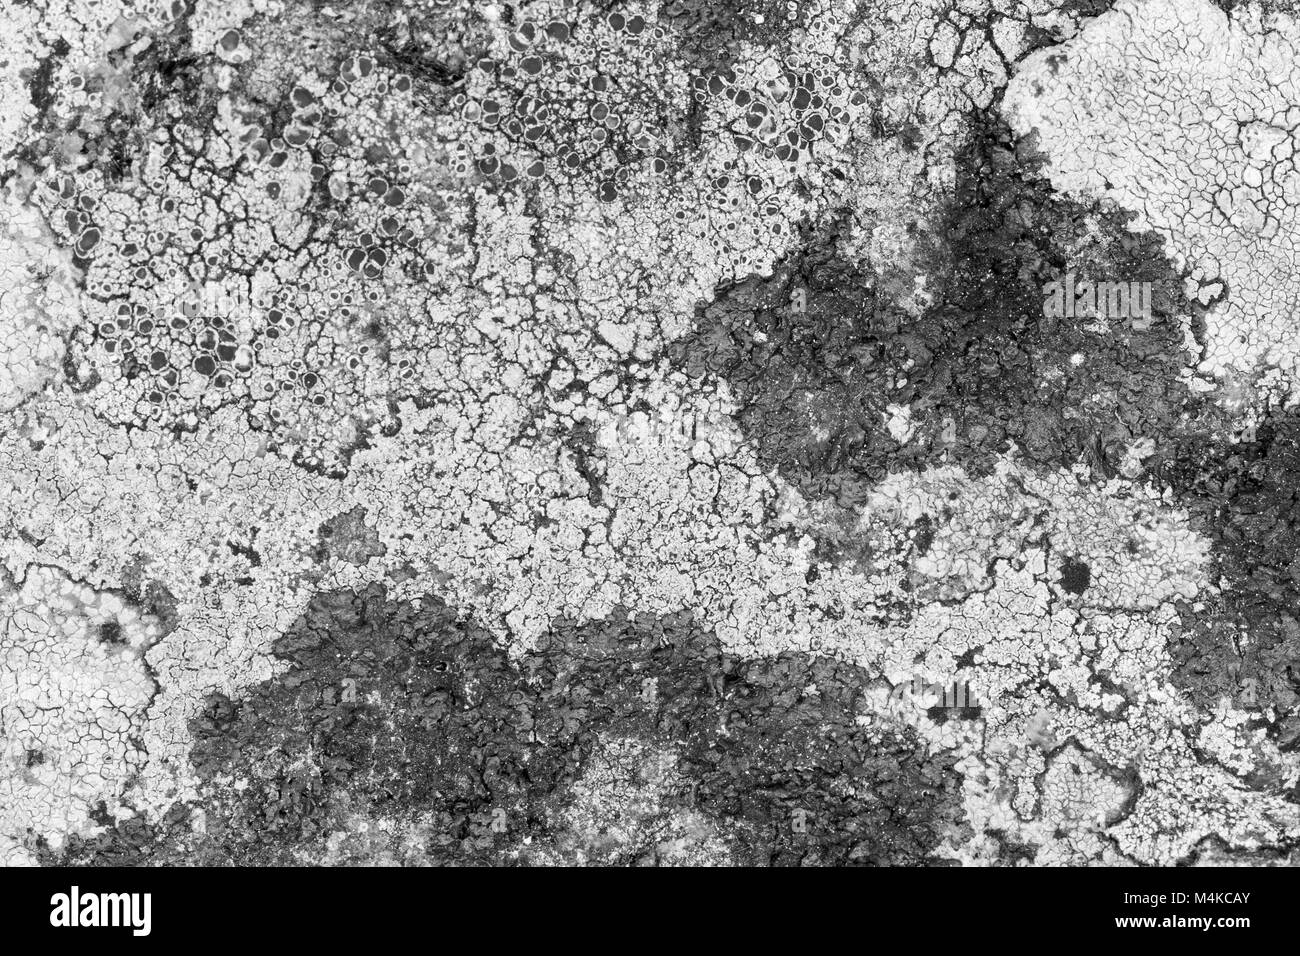 Close-up de différentes sortes de lichens sur un rocher en noir et blanc. Banque D'Images